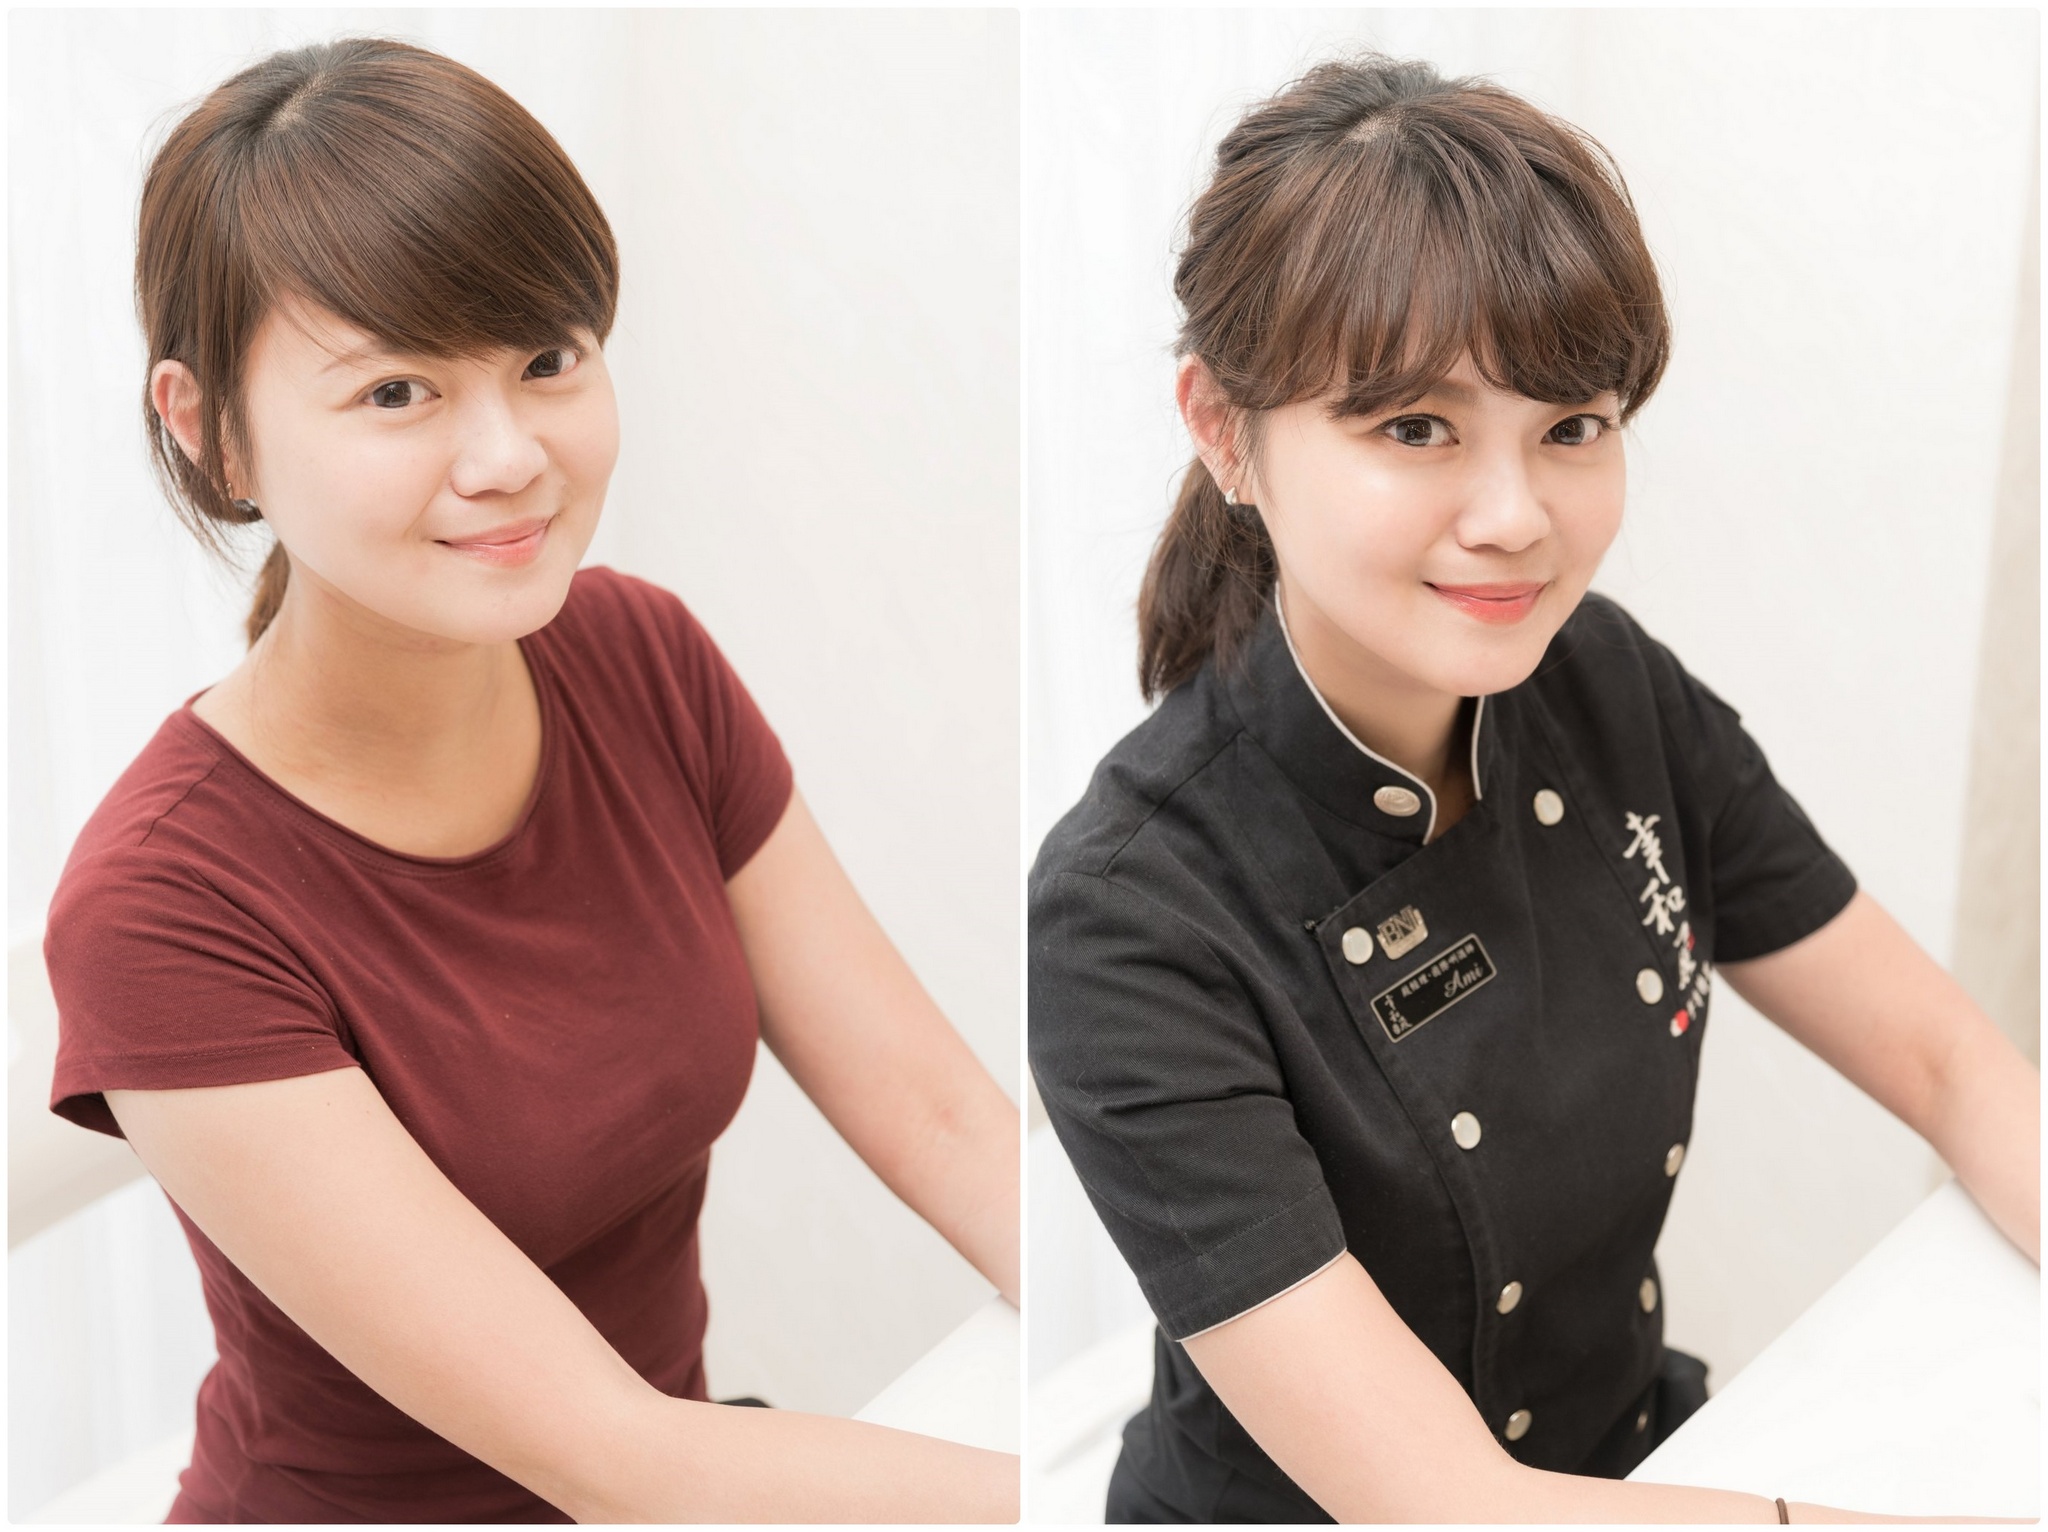 化妝服務 單次彩妝設計 日式料理老闆娘 Ami